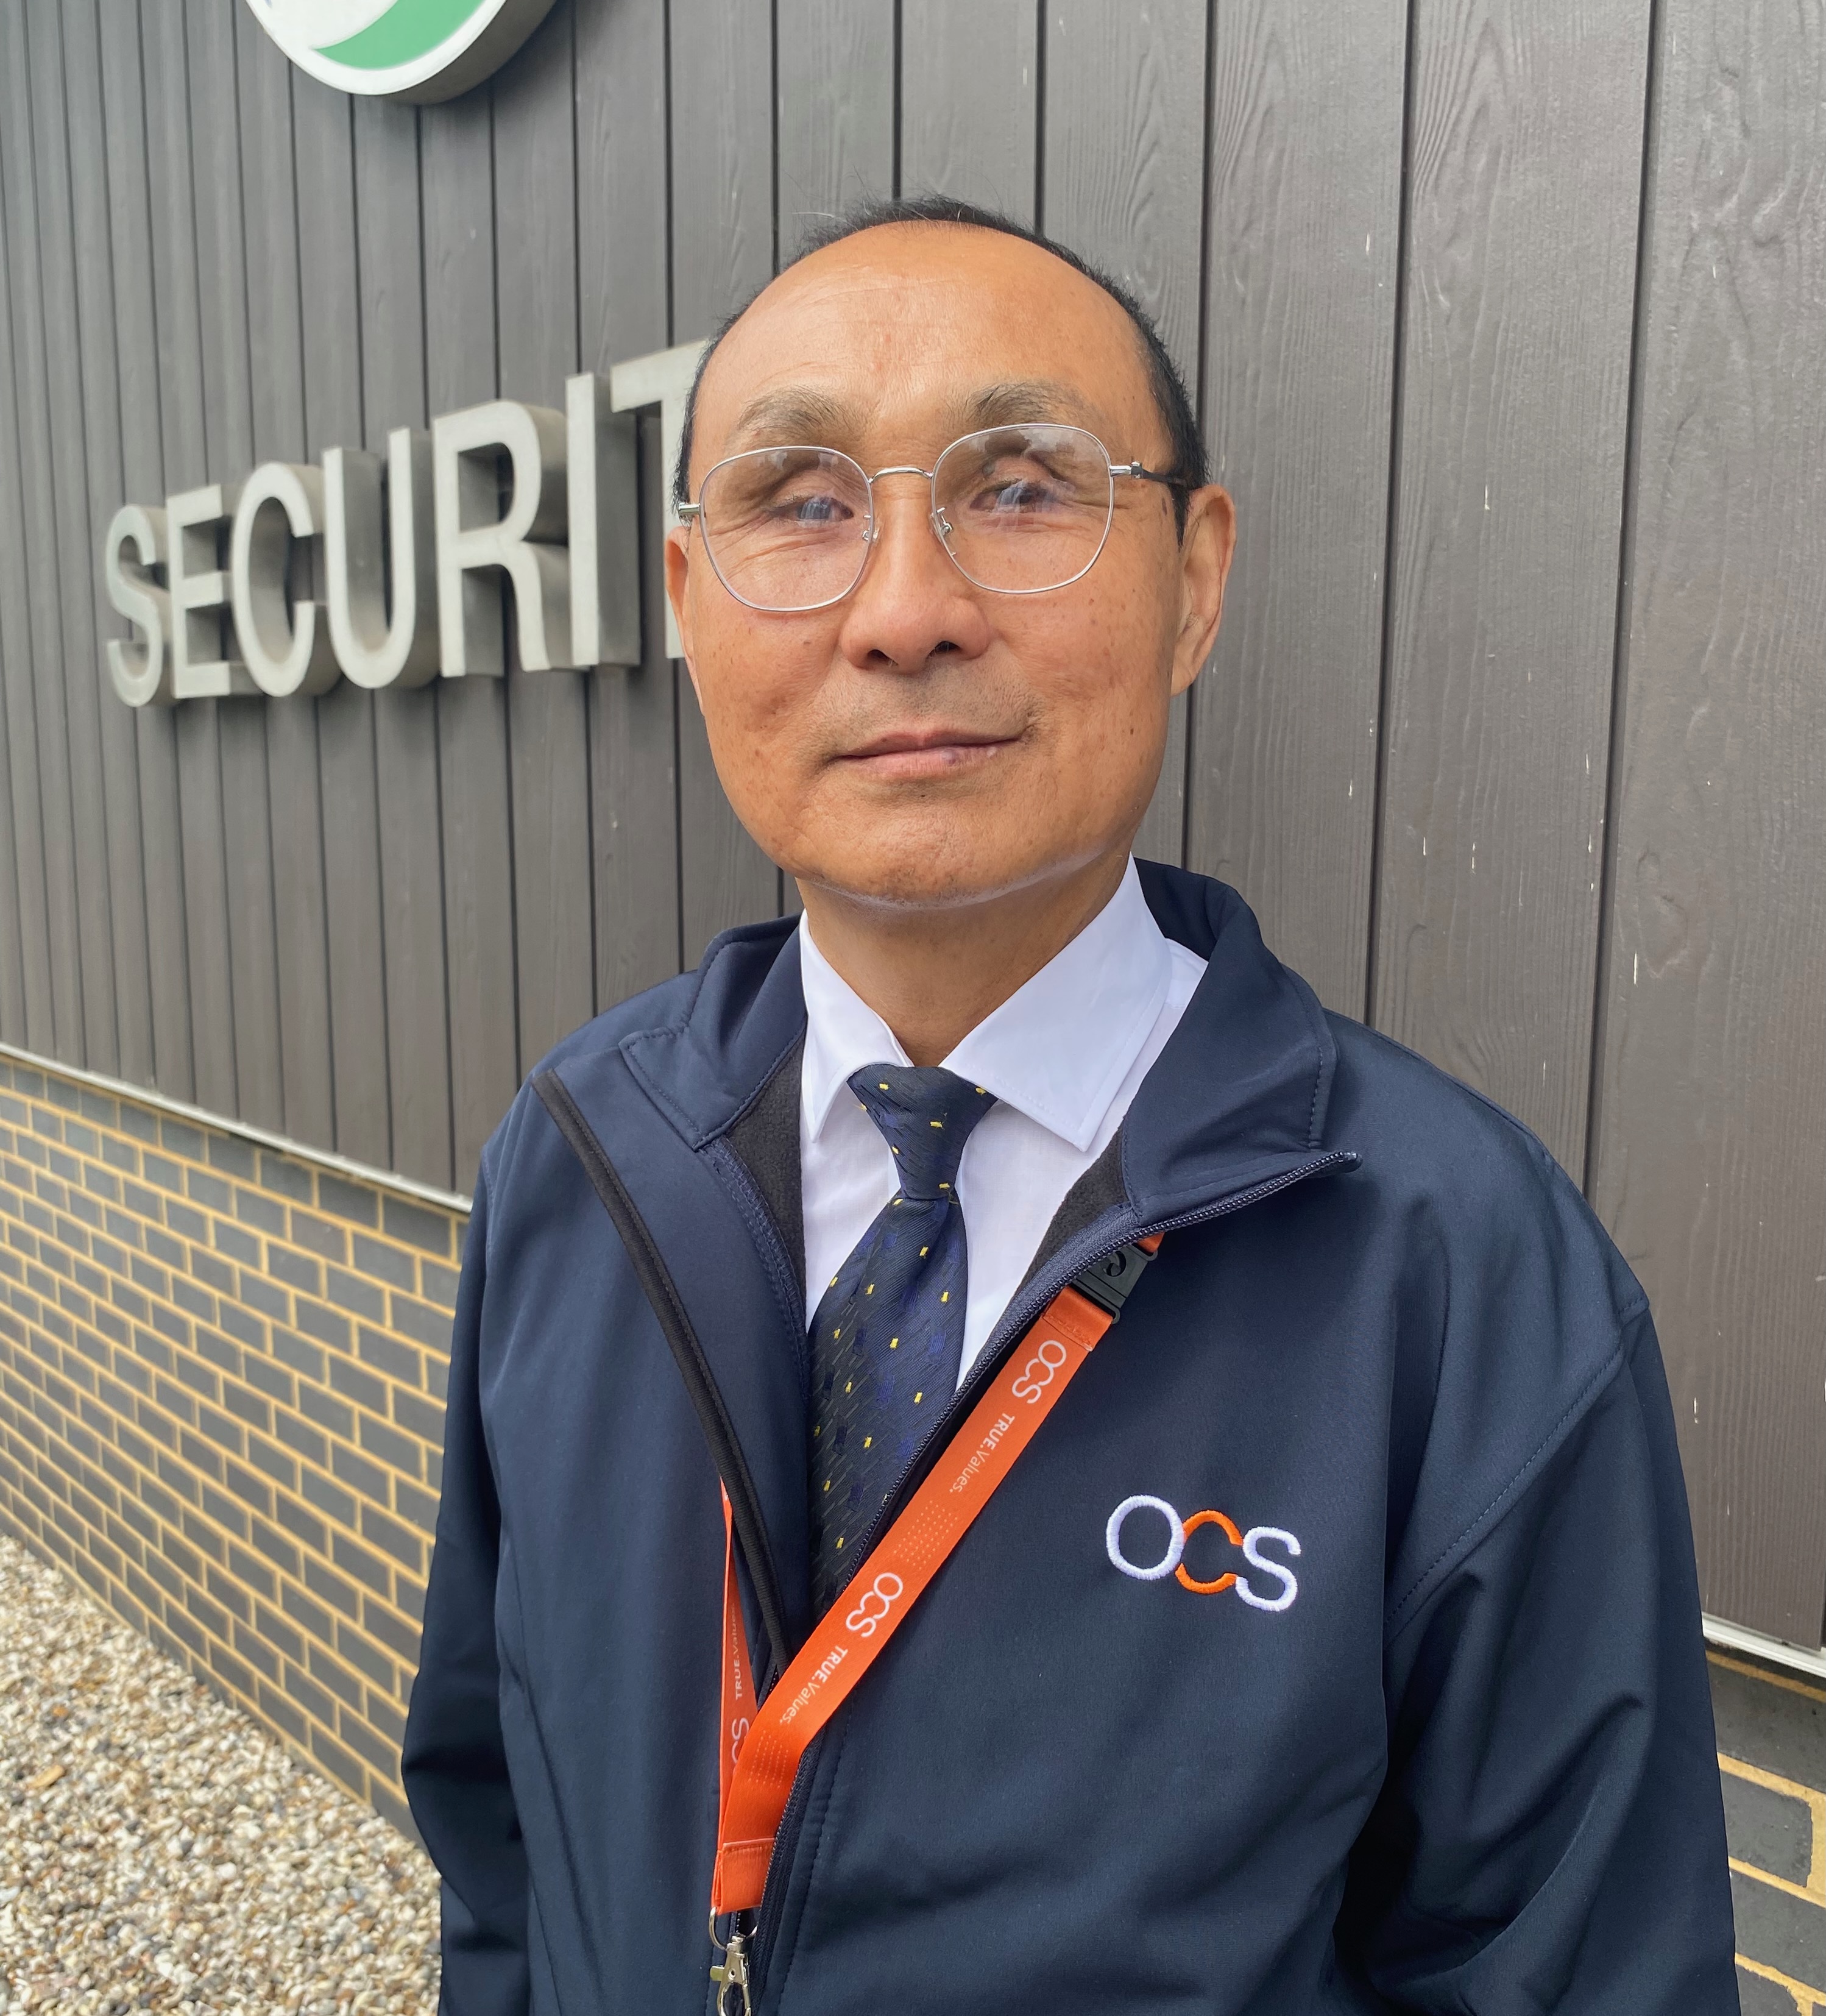 Gurkha Bir Bahadur Rai es ahora supervisor en la empresa de seguridad OCS, después de conseguir el trabajo gracias a 15 años de experiencia militar entre 1979 y 1994.